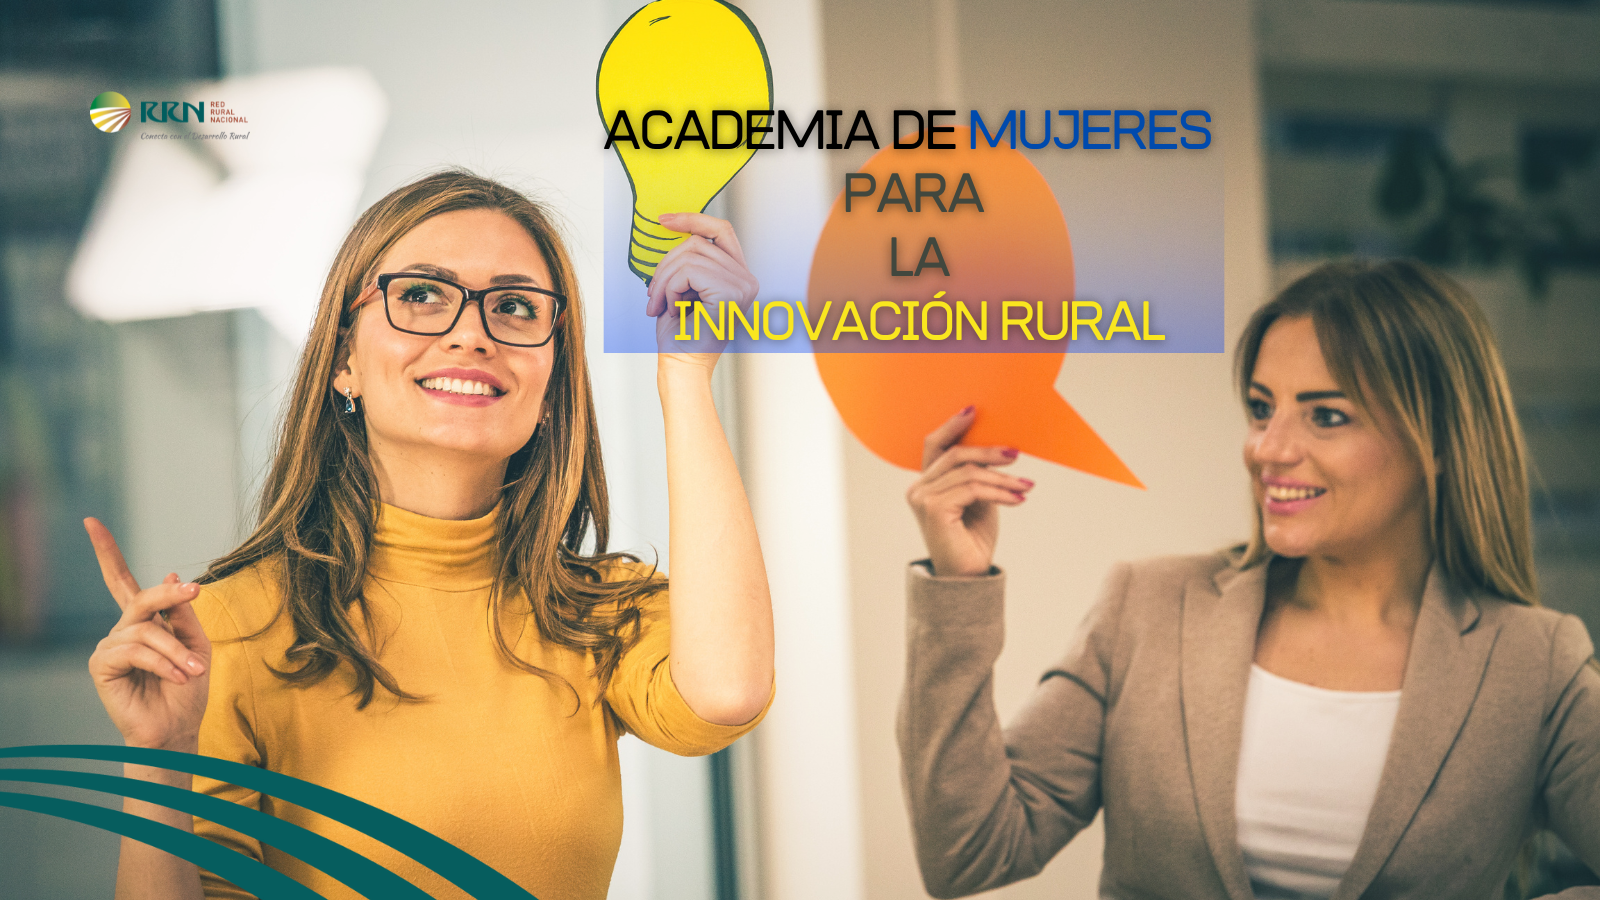 Academia de mujeres para la innovación rural